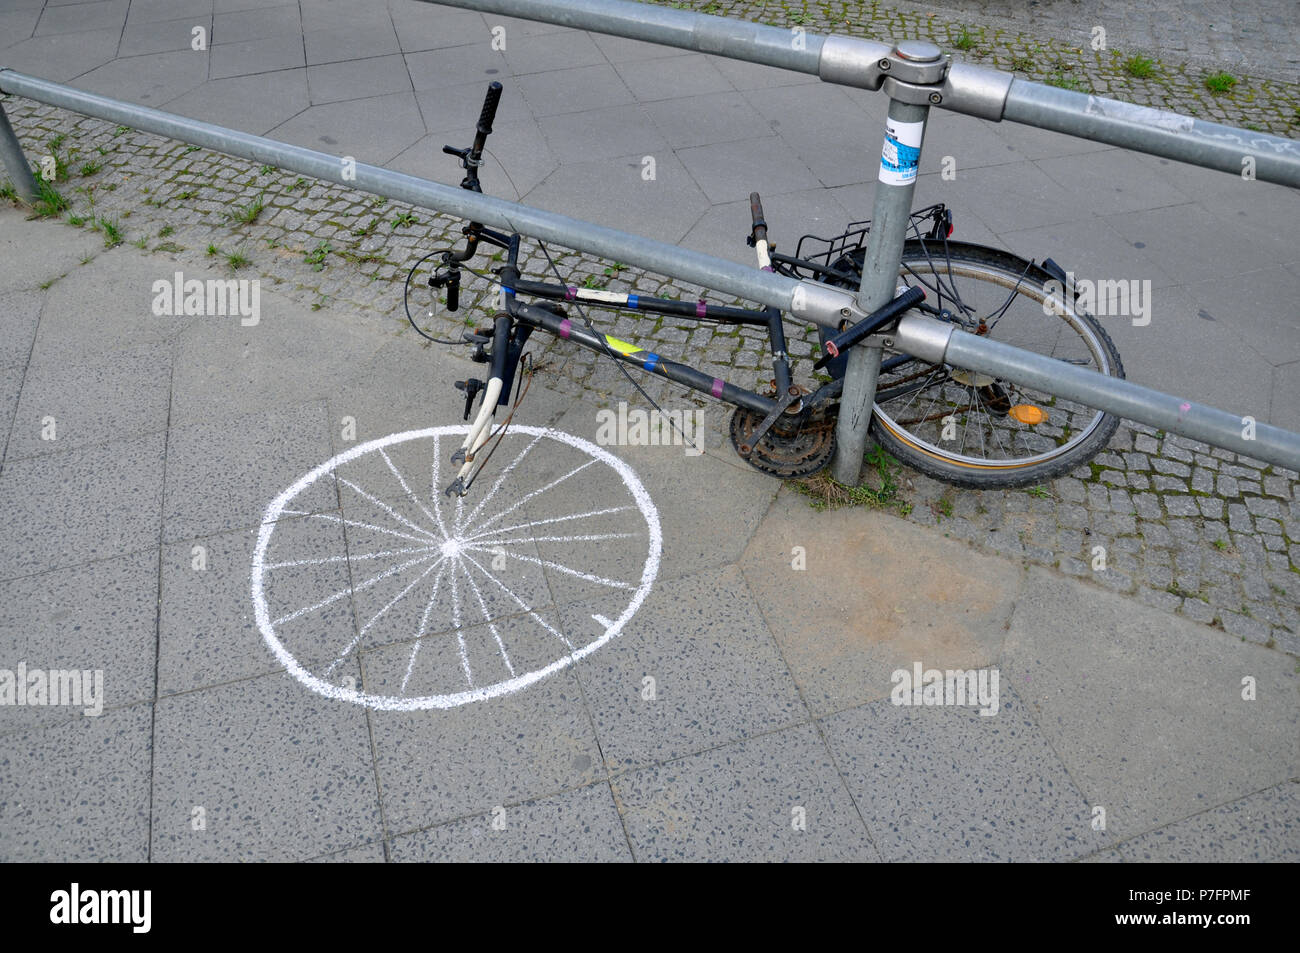 Location défectueux avec vélo peint, Allemagne Banque D'Images